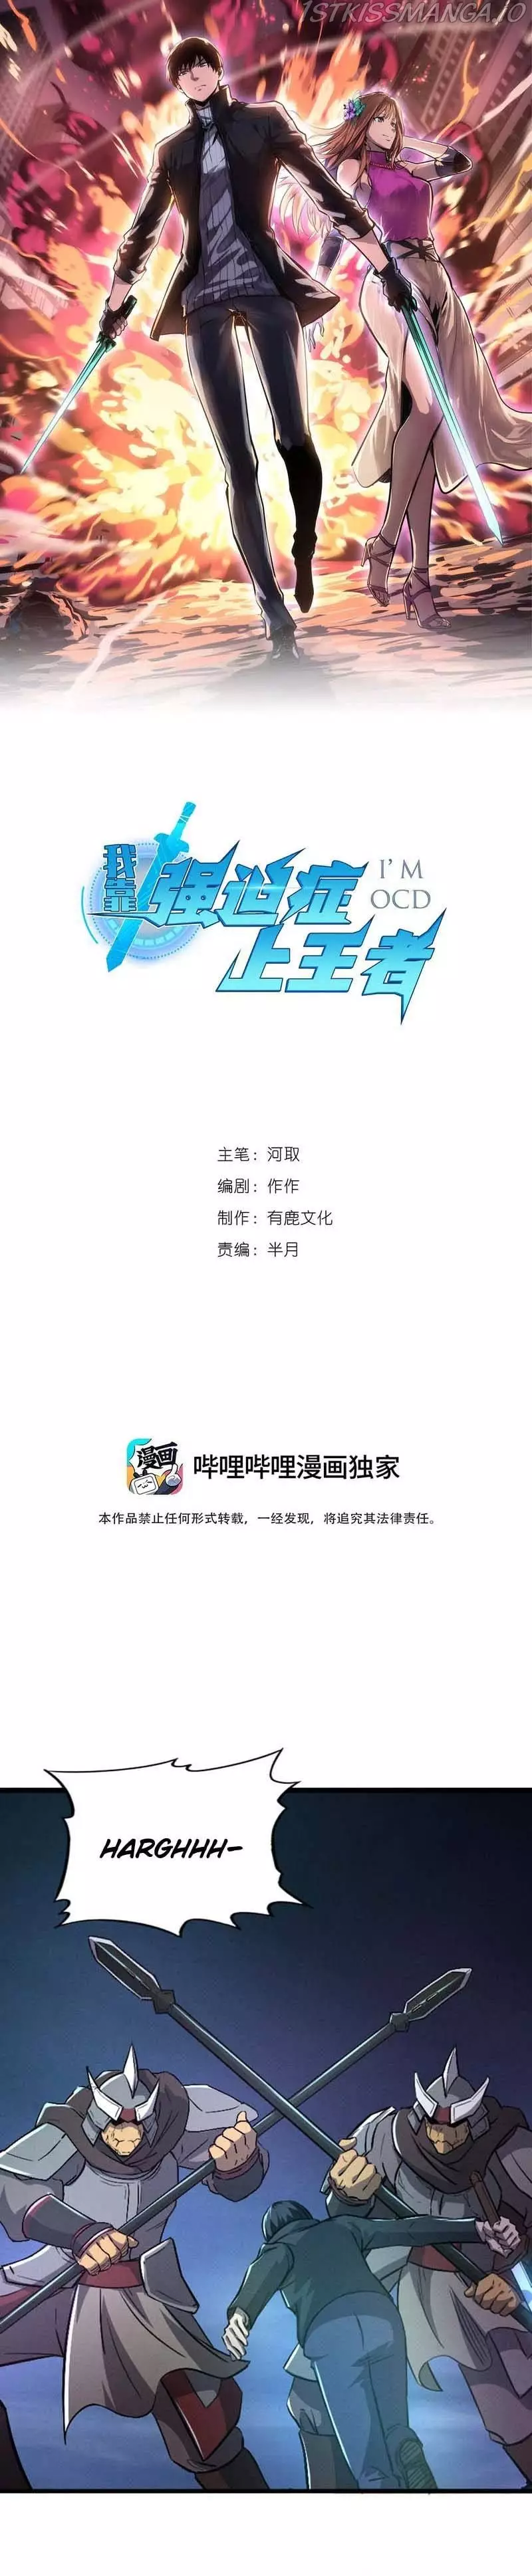 Wo Kao Qiangpo Zheng Shang Wangzhe - 44 page 1-187d679e